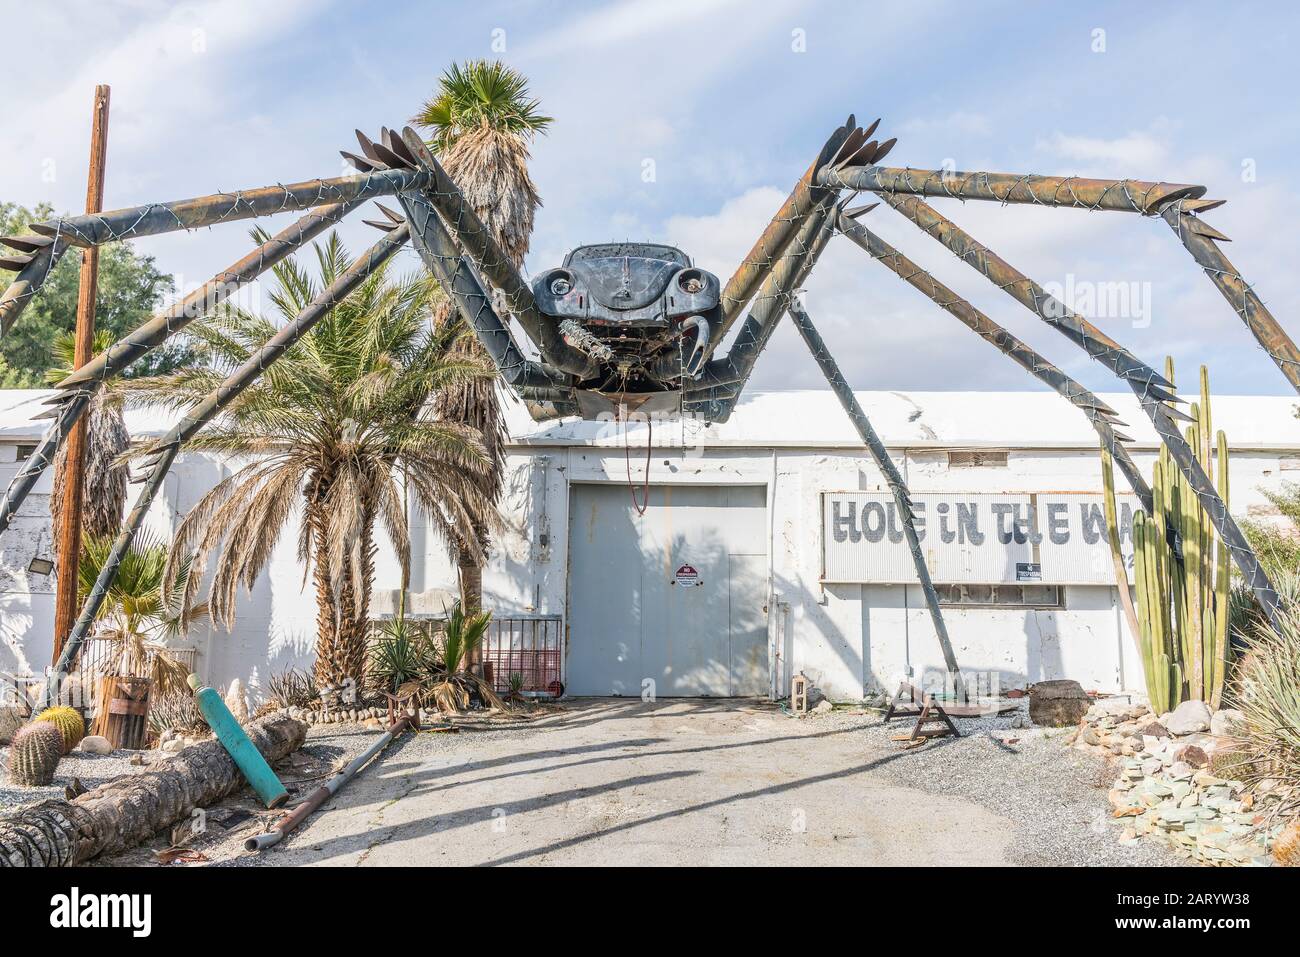 Eine gigantische Spinnenplastik aus geschweißten Teilen, darunter ein Volkswagen Käfer, steht außerhalb eines Geschäfts entlang der Indian Canyon Rd in Palm Springs. Stockfoto